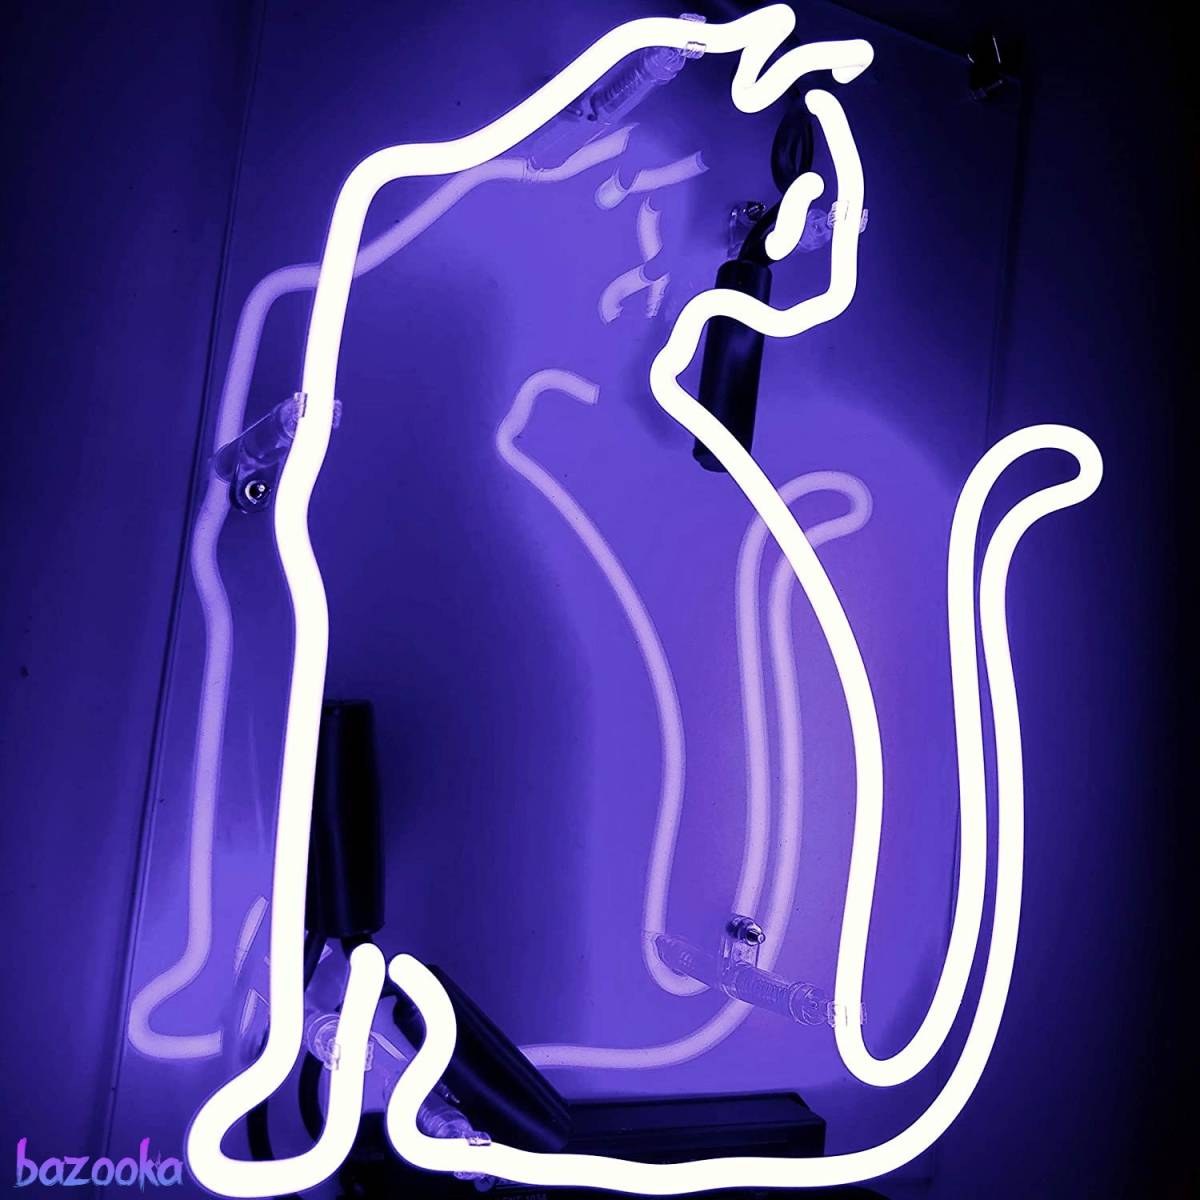 ネオンサイン 可愛い座る猫 紫色の光 パープル 存在感抜群 ルームデコレーション LEDイルミネーション ナイトライト 店内装飾 雰囲気作り